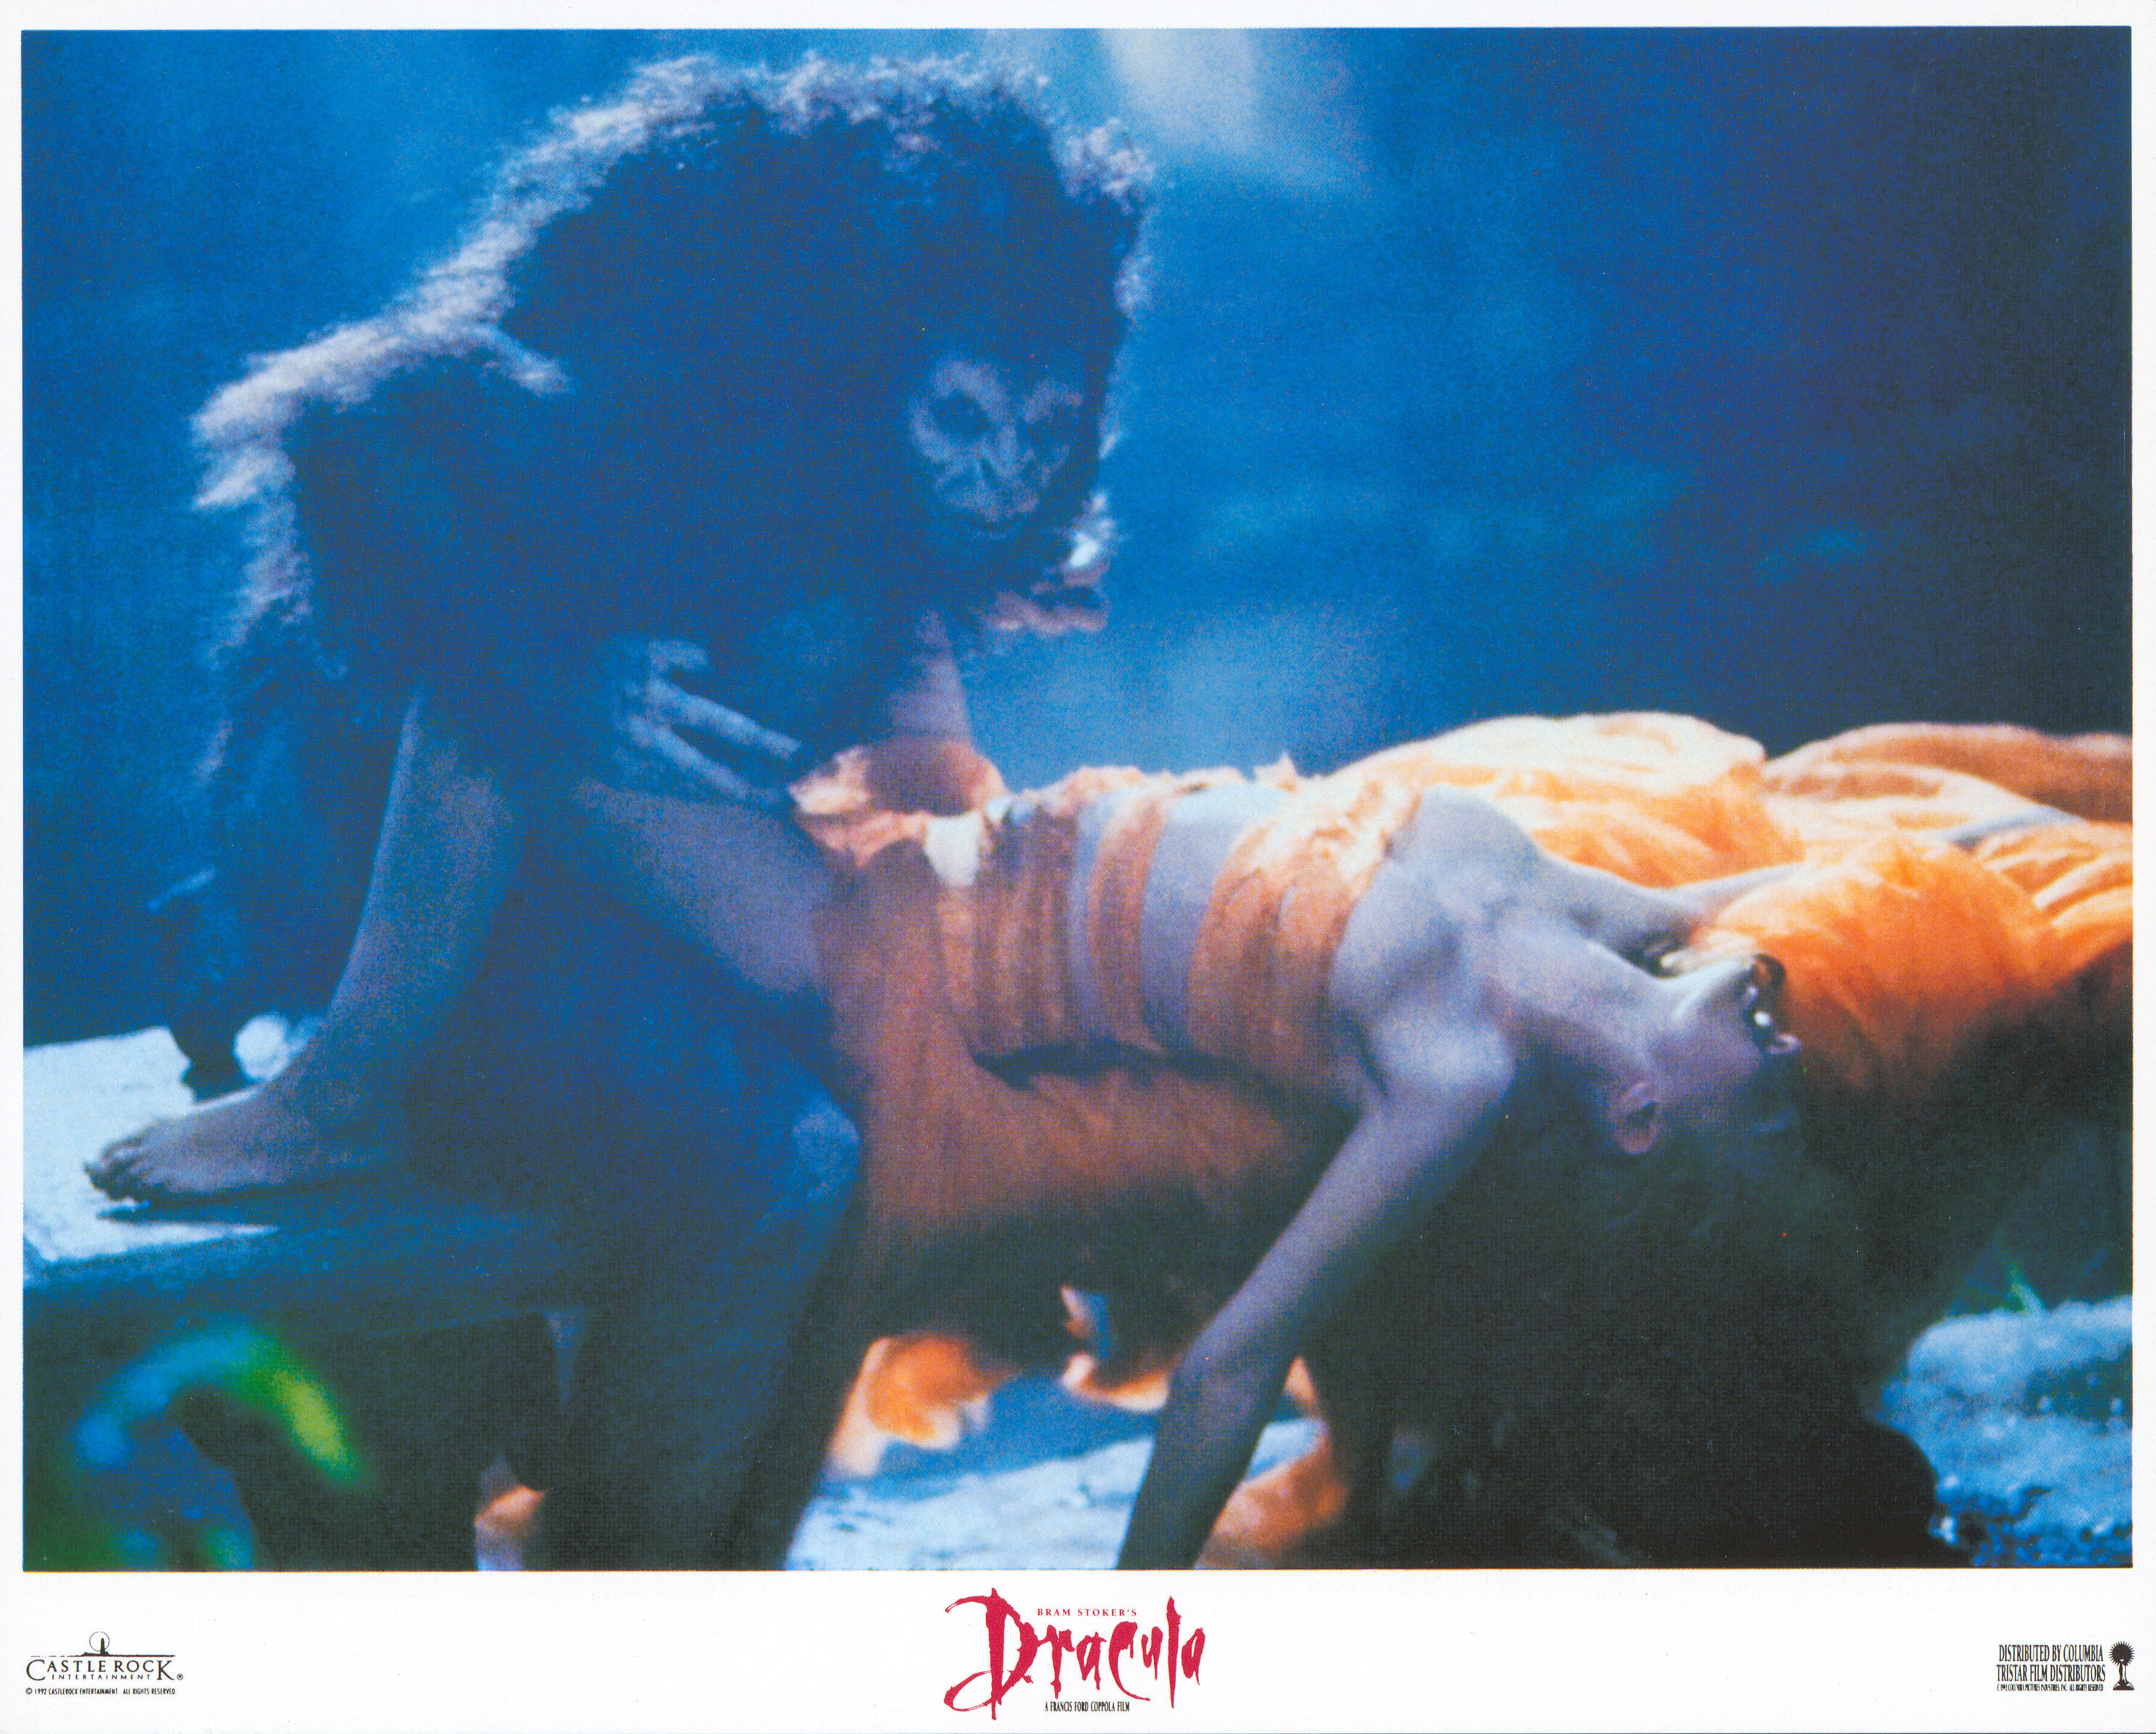 Дракула (Dracula, 1992), режиссёр Фрэнсис Форд Коппола, американский постер к фильму (ужасы, 1992 год) (7)